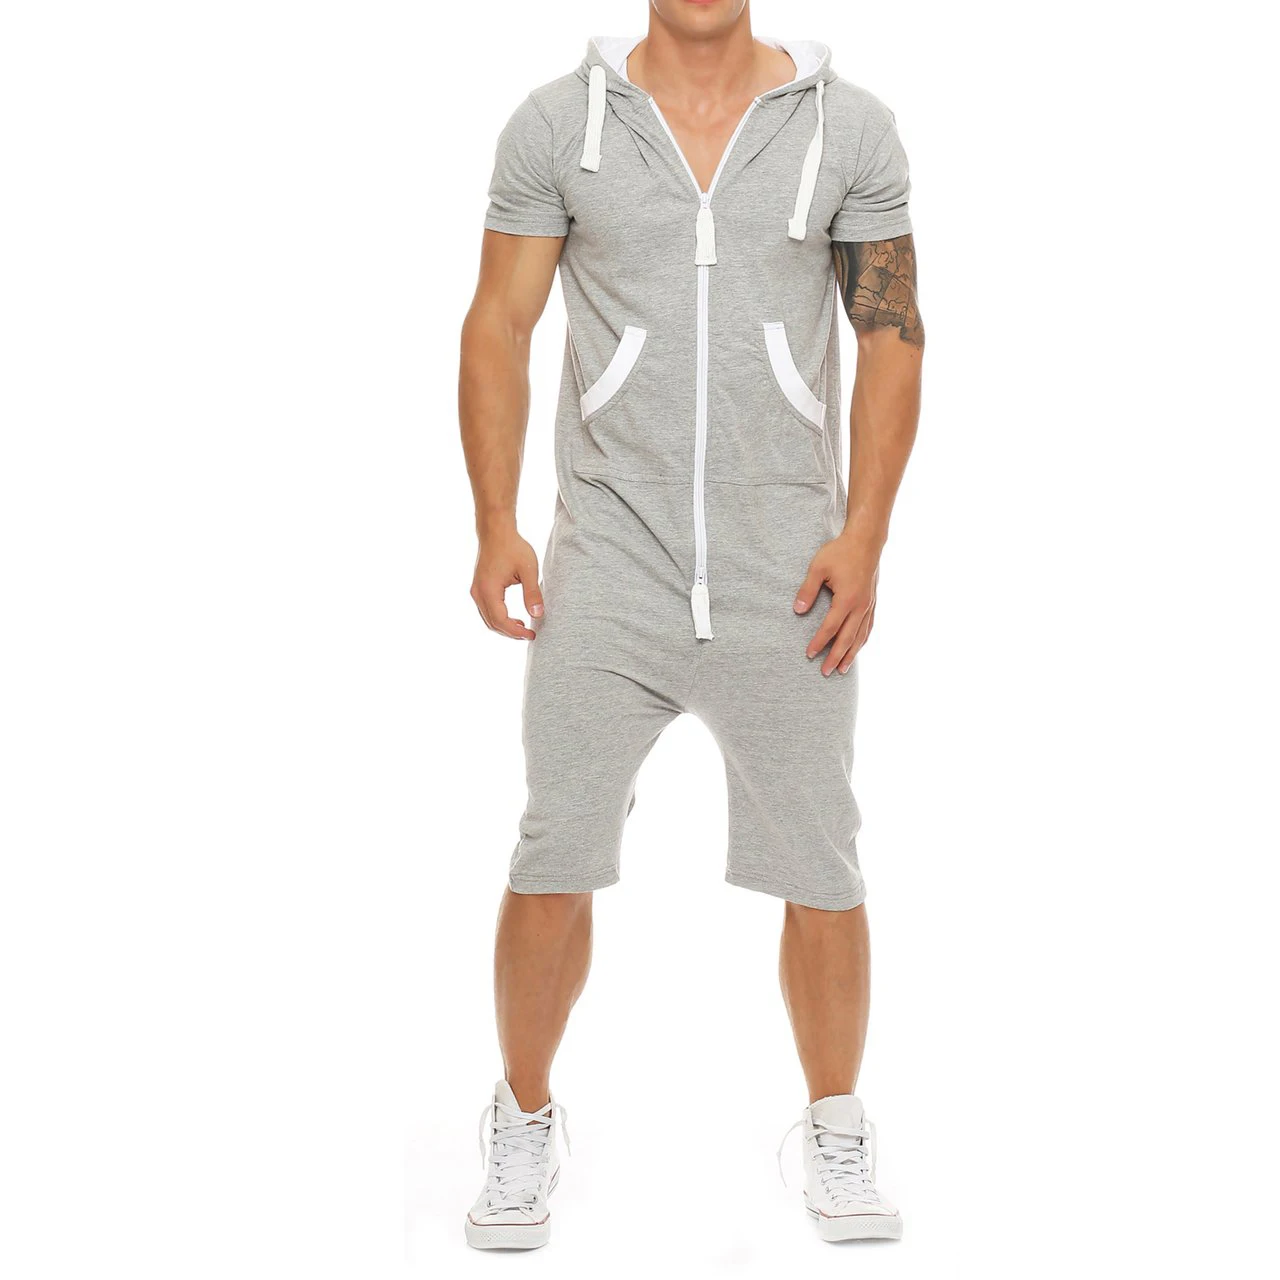 Oeak летние мужские комбинезоны в стиле пэчворк, мужская спортивная одежда, повседневный спортивный костюм с капюшоном и карманами, короткие комбинезоны, Pantalon Hombre - Цвет: Серый